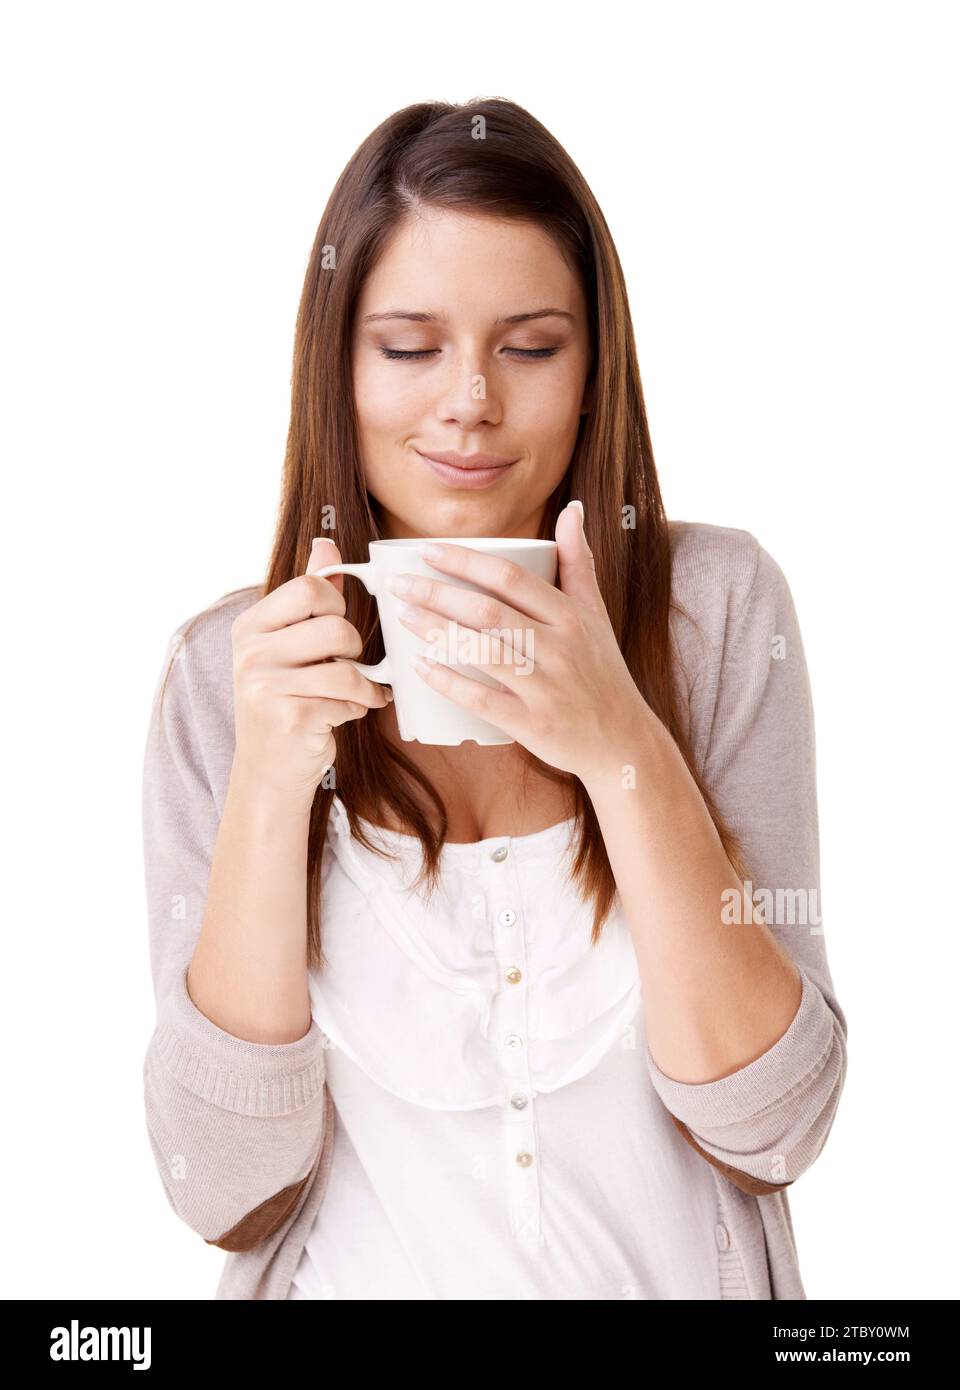 Kaffee, Entspannung und Morgen mit einer jungen Frau im Studio isoliert auf weißem Hintergrund für Koffein. Glücklich, ruhig und ruhig mit einer selbstbewussten Person Stockfoto